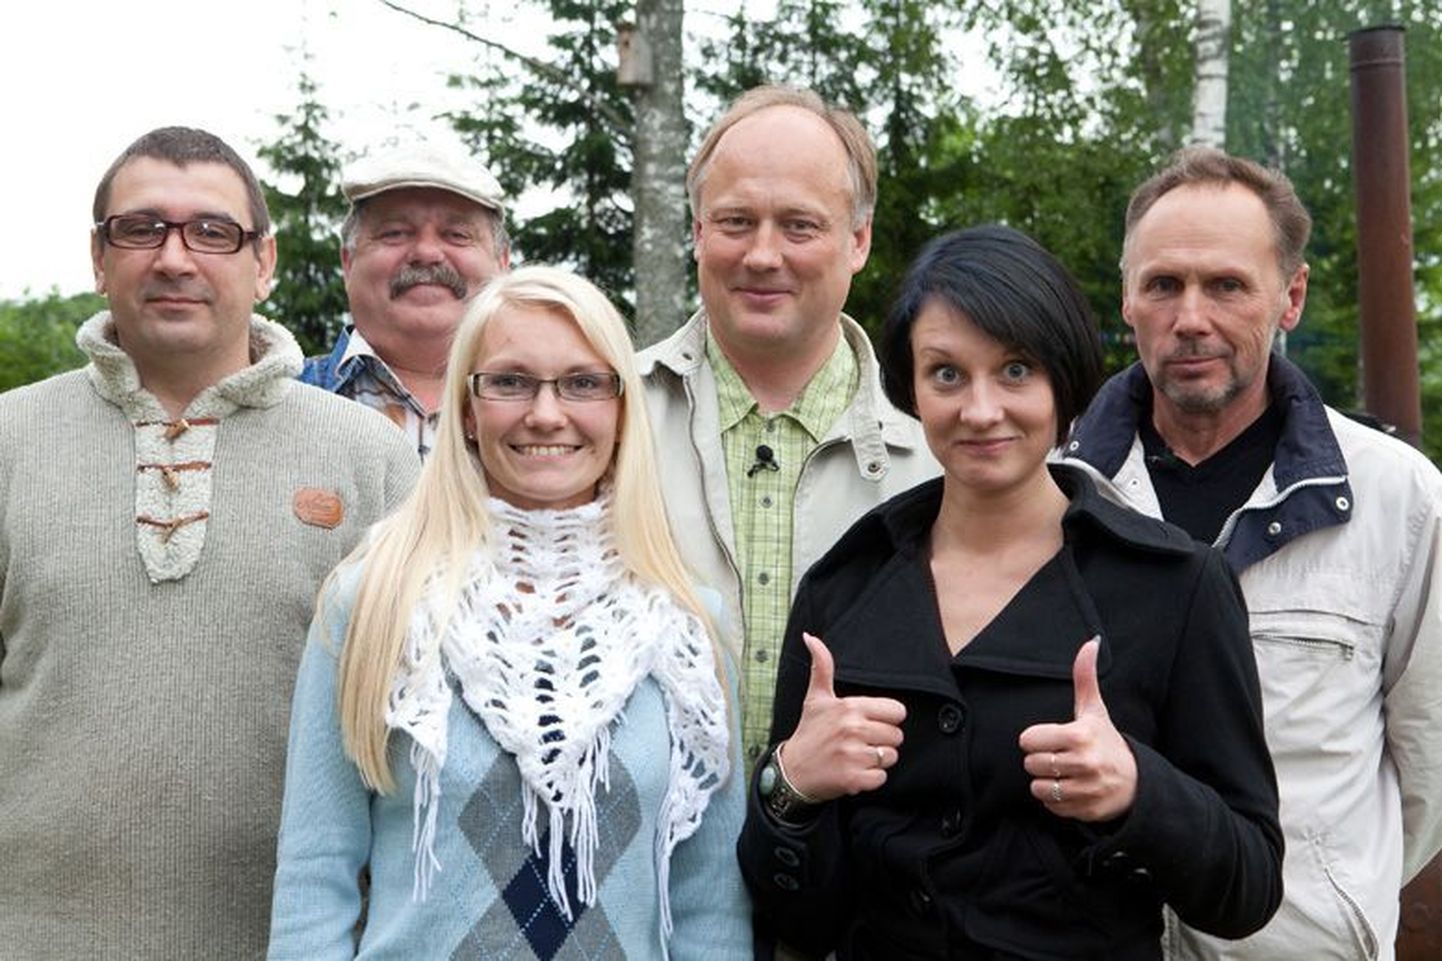 Õhtusöögisaates osalejad (vasakult) Andres, Väino, Andrese naine, Tõnu, Ingrid ja Peeter.